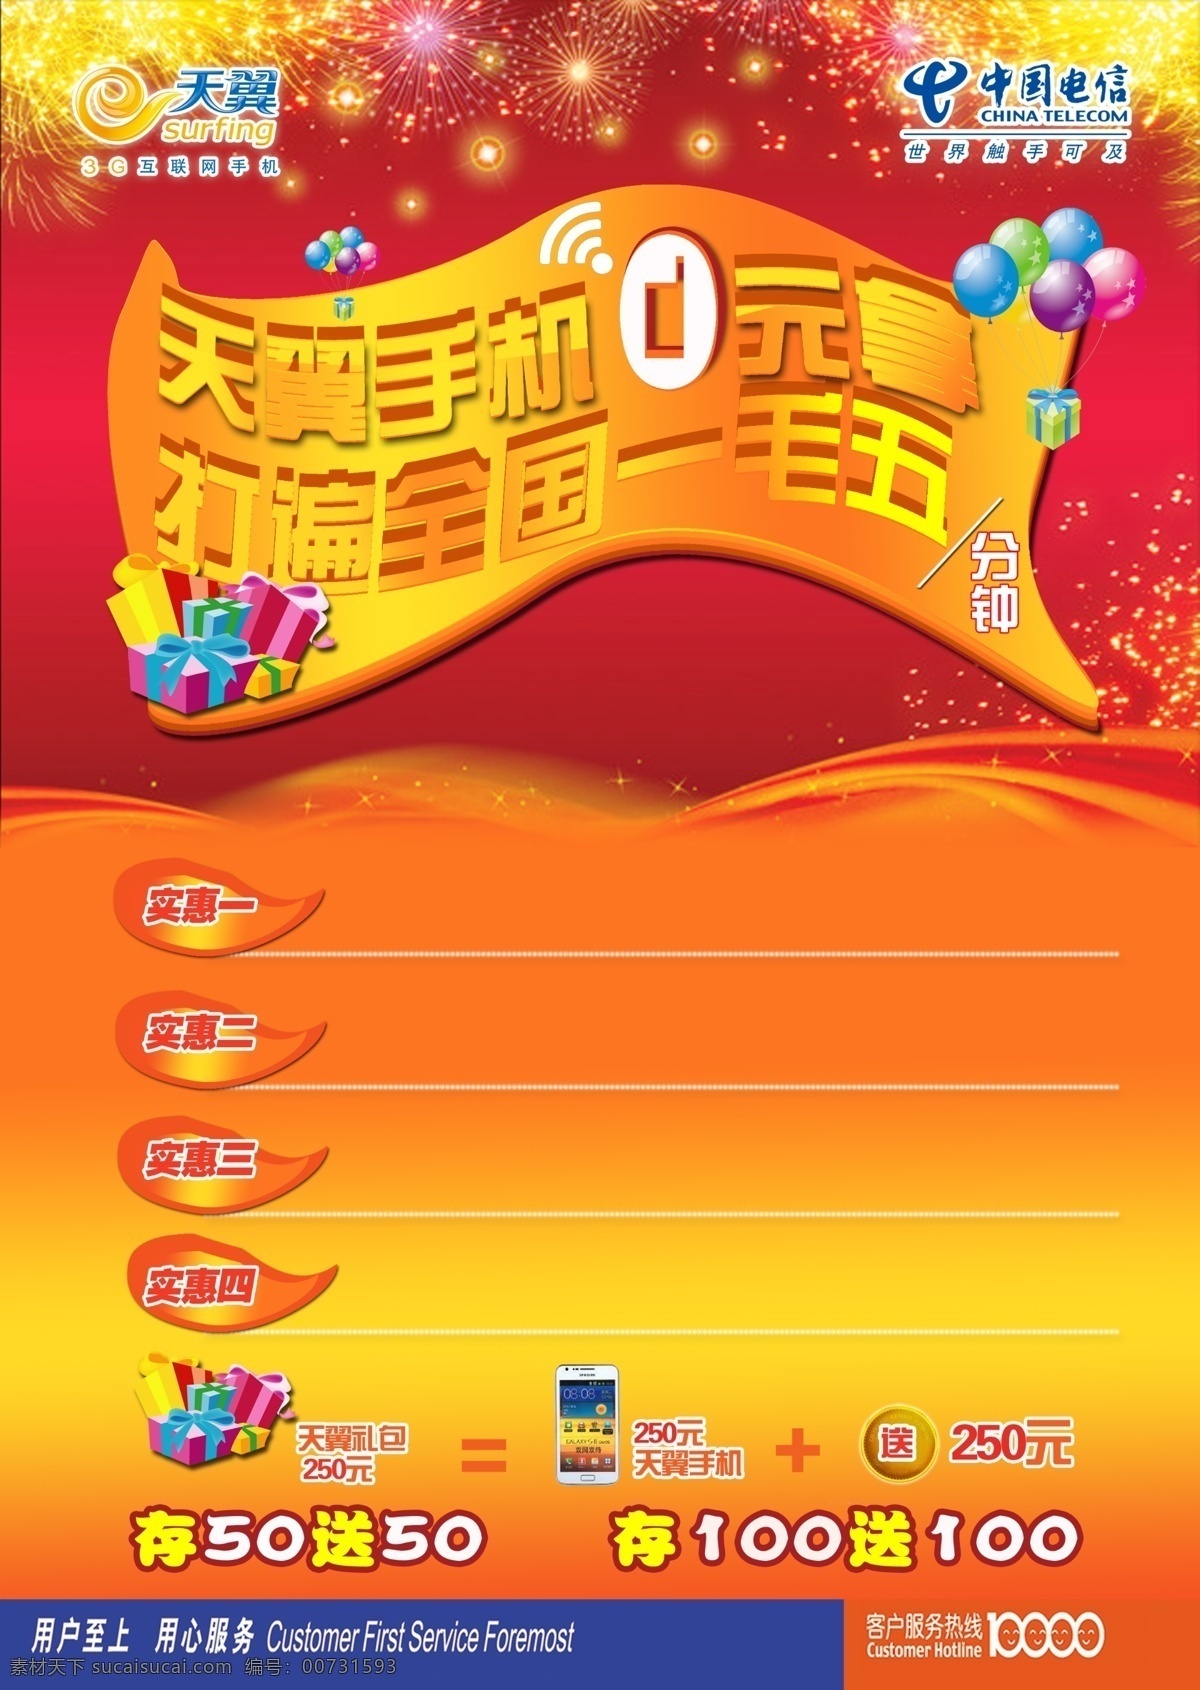 电信广告 中国电信 手机 天翼 庆典 红色底面 dm宣传单 广告设计模板 源文件